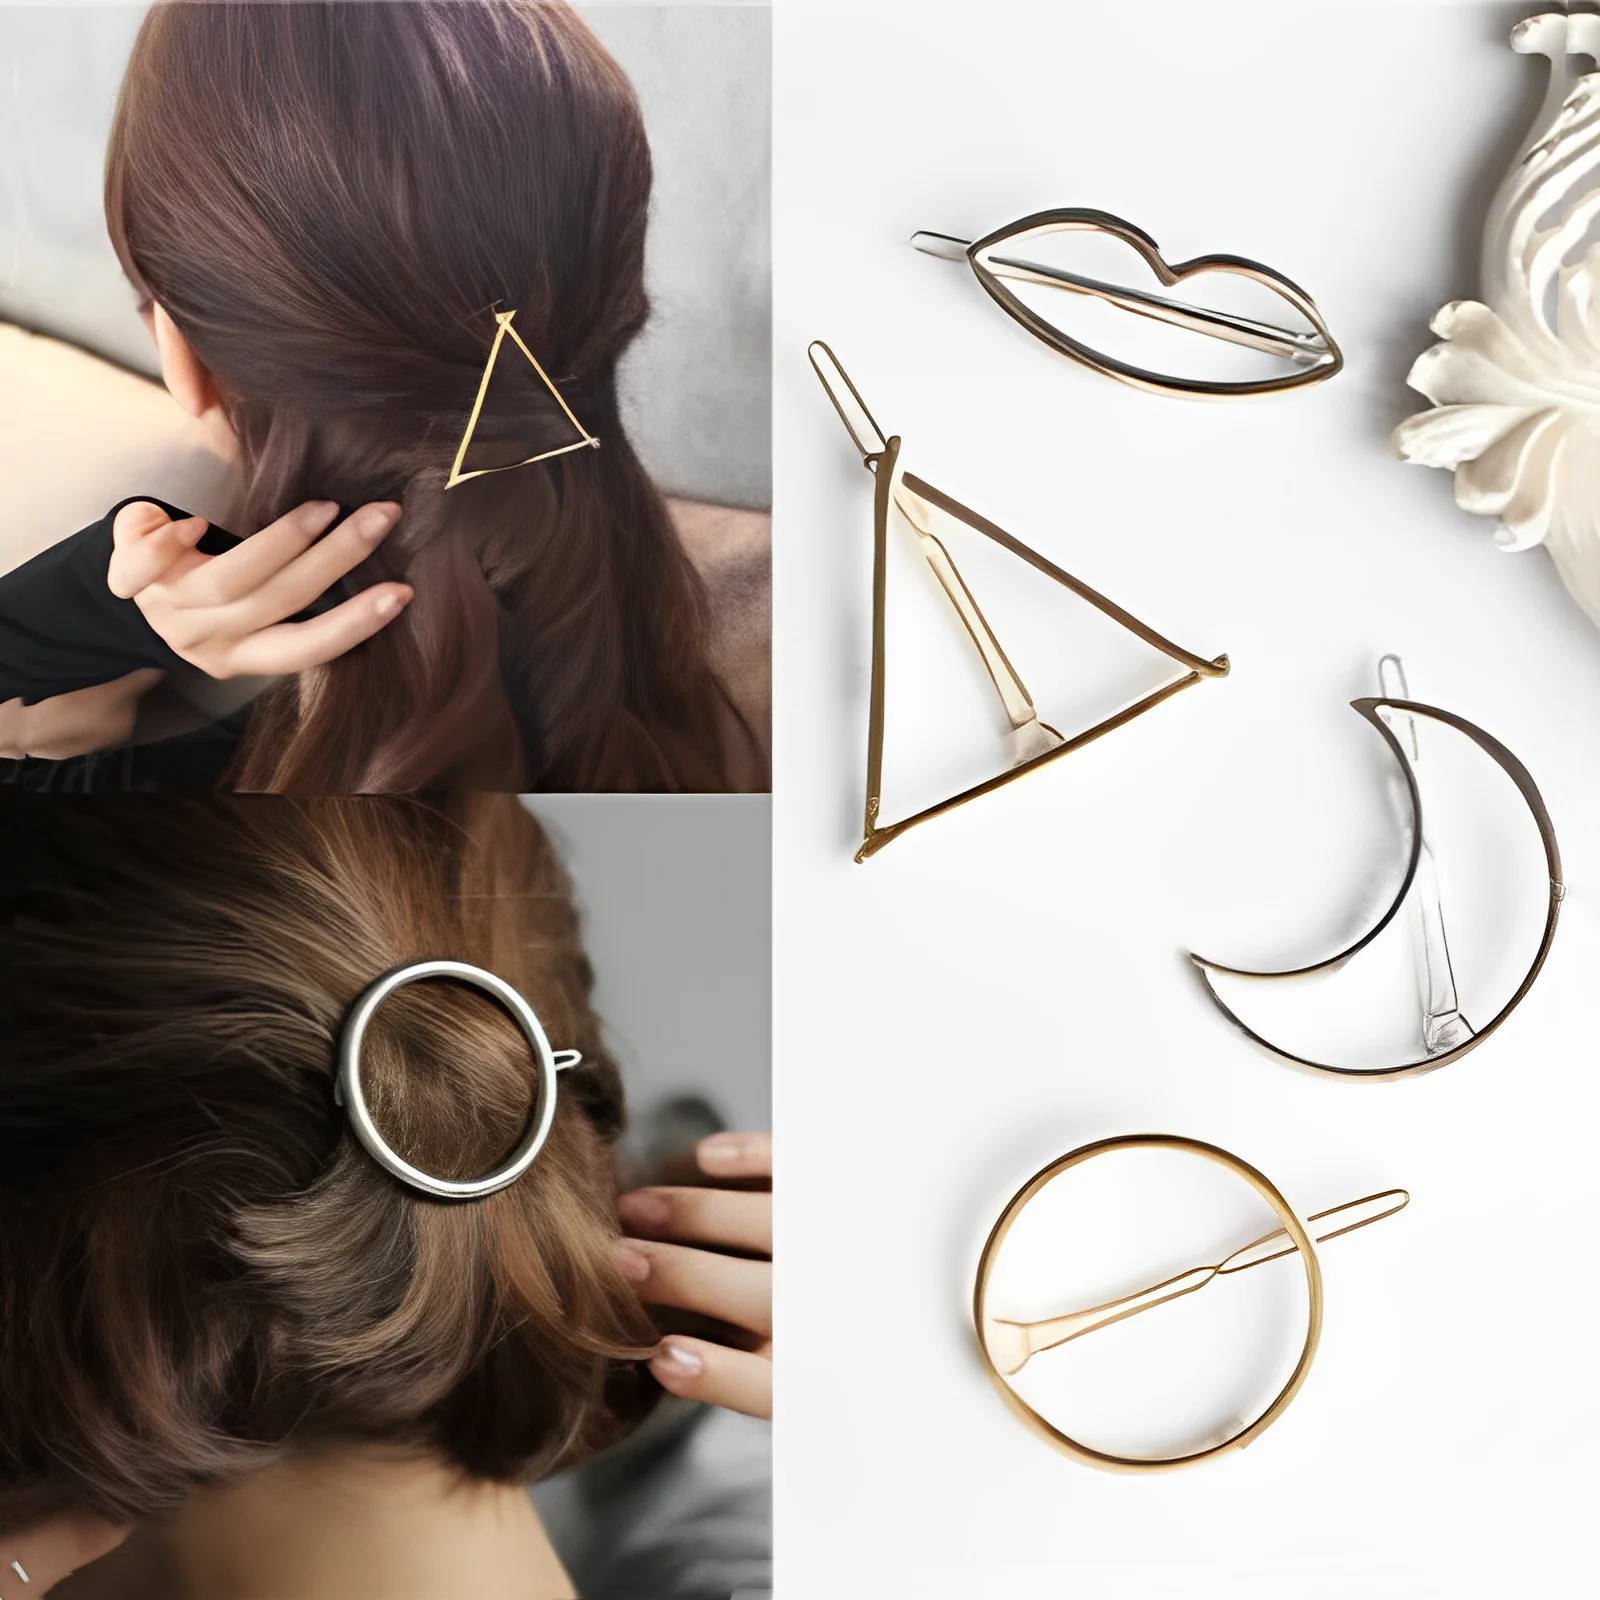 

Fashion Woman Hair Accessories Triangle Hair Clip Pin Metal Geometric Alloy Hairband Moon Circle Hairgrip Barrette Girls Holder